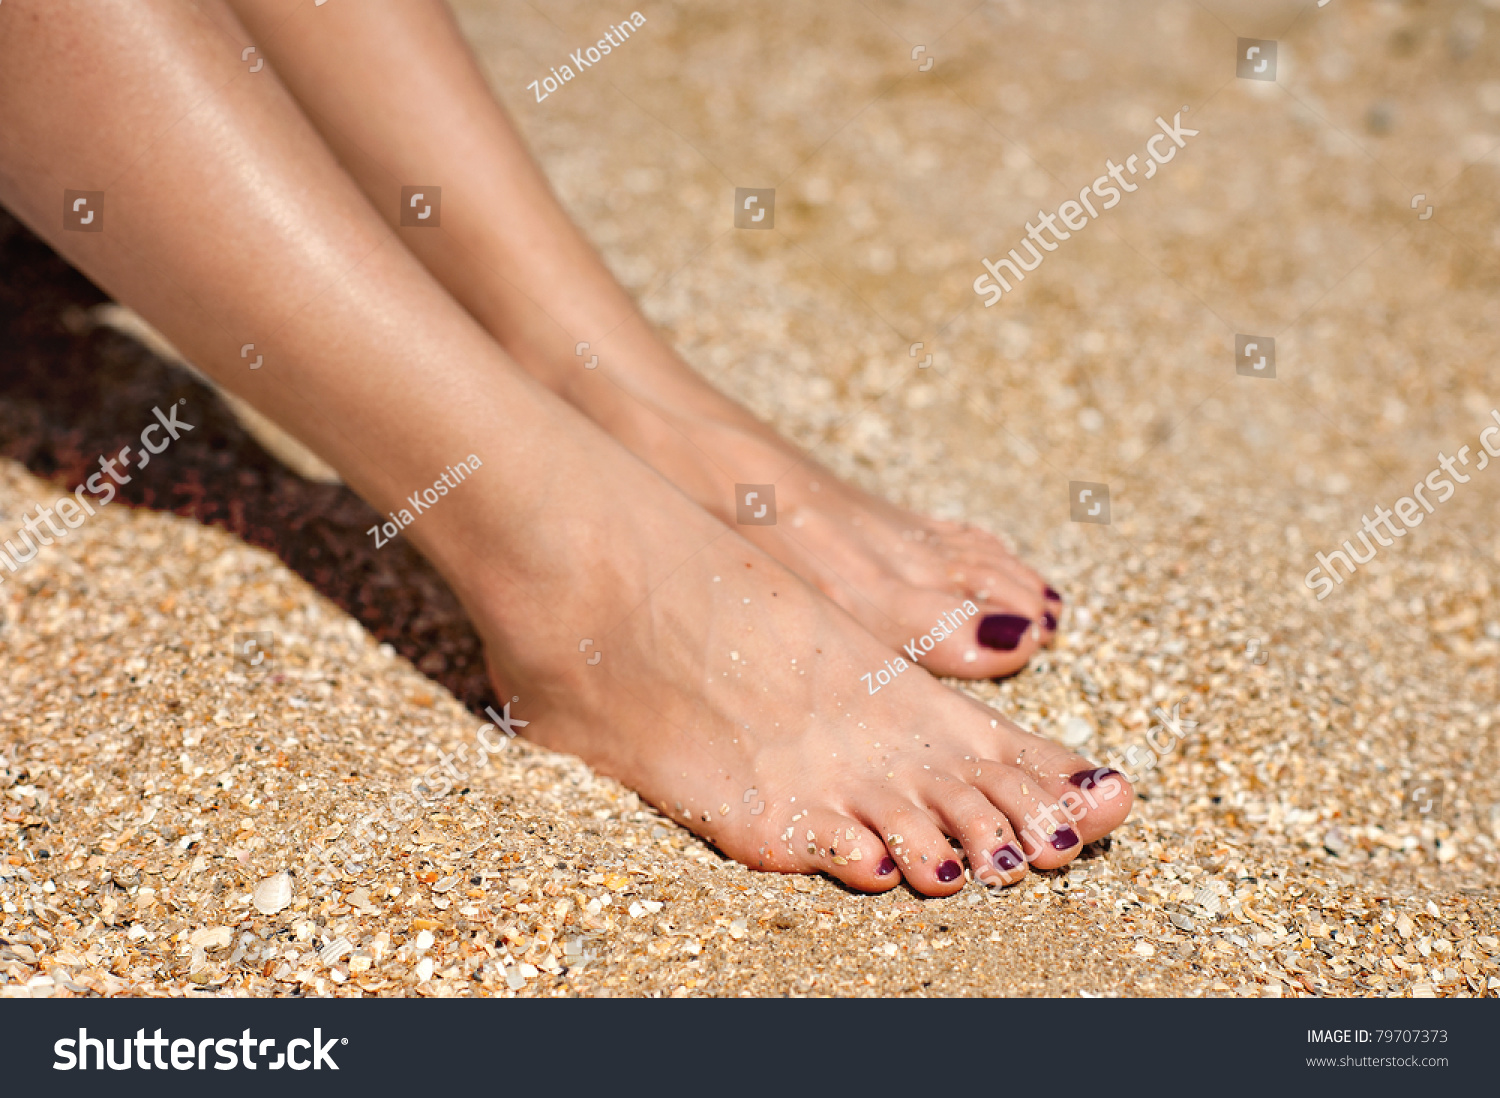 Woman Feet Dark Pedicure Relaxing On Stock Photo 79707373 - Shutterstock